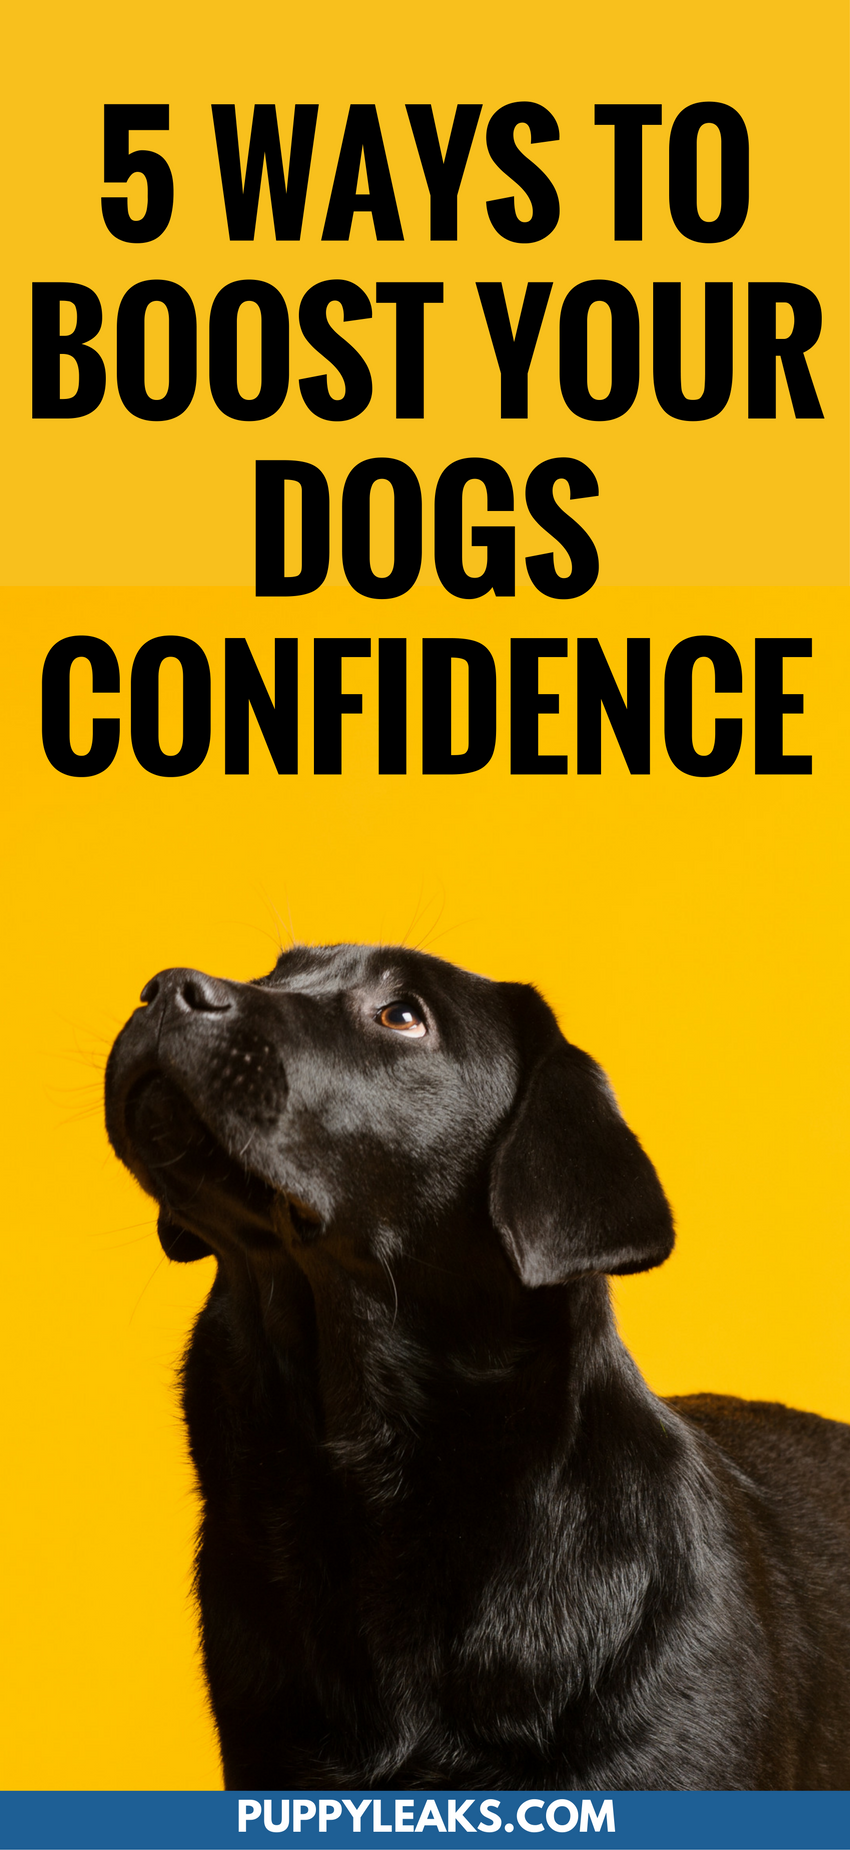 강아지의 자신감을 높이는 5가지 방법